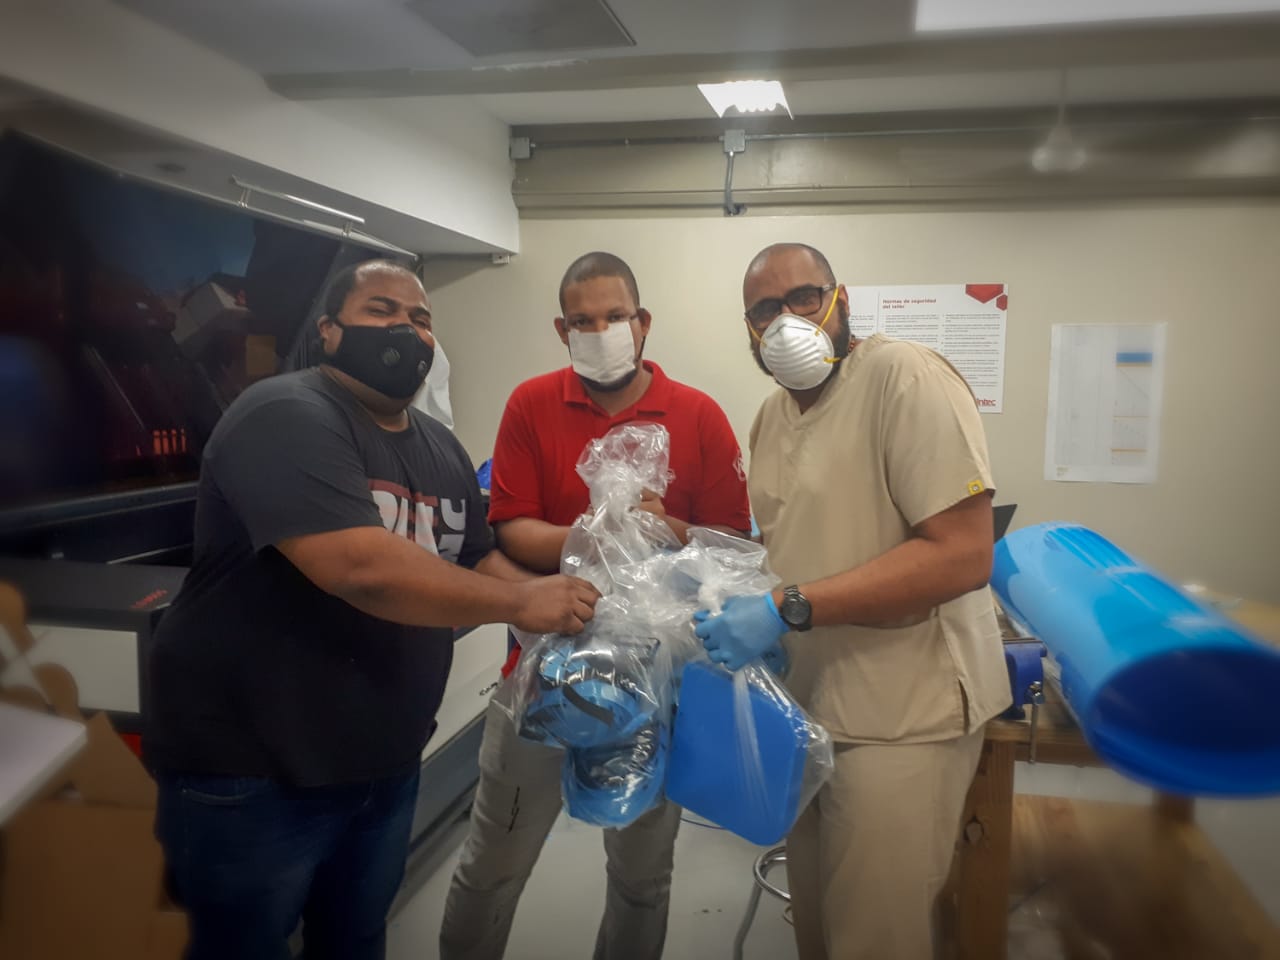 Entrega_de_50_m%C3%A1scaras_al_Hospital_Dar%C3%ADo_Contreras-min Instituto Tecnológico de Santo Domingo - Laboratorios del INTEC fabrican máscaras reutilizables para personal médico; solicitan apoyo para insumos